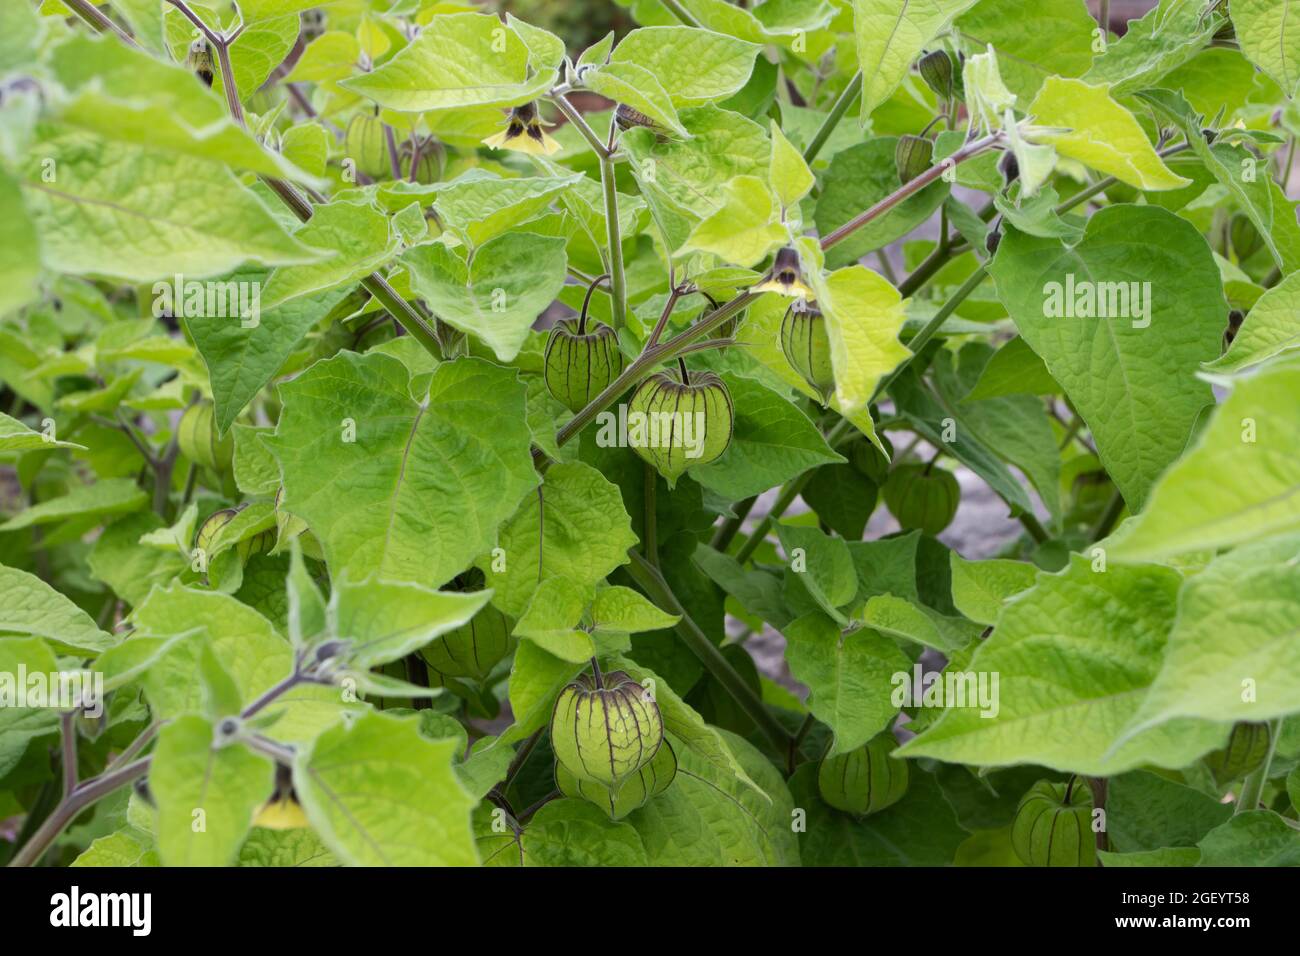 Plantes de groseilles à maquereau ou de groseilles à feuilles poilues, fleurs jaunes et fruits immatures dans du calice vert. Physalis peruviana. Banque D'Images